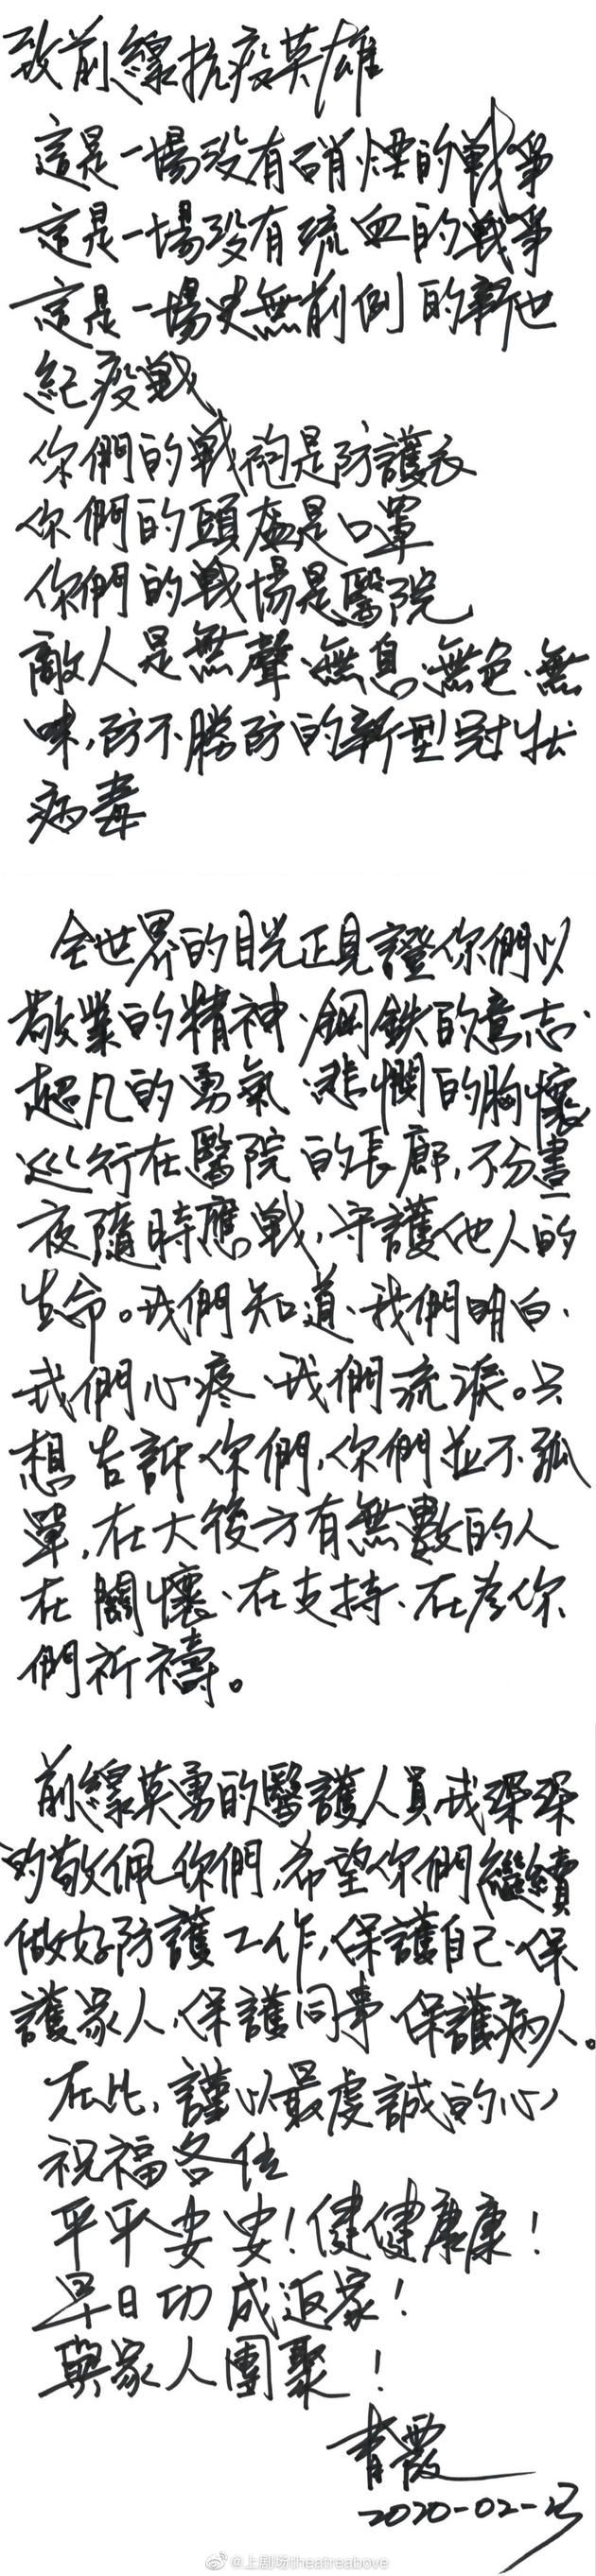 林青霞写亲笔信致敬前线抗疫英雄